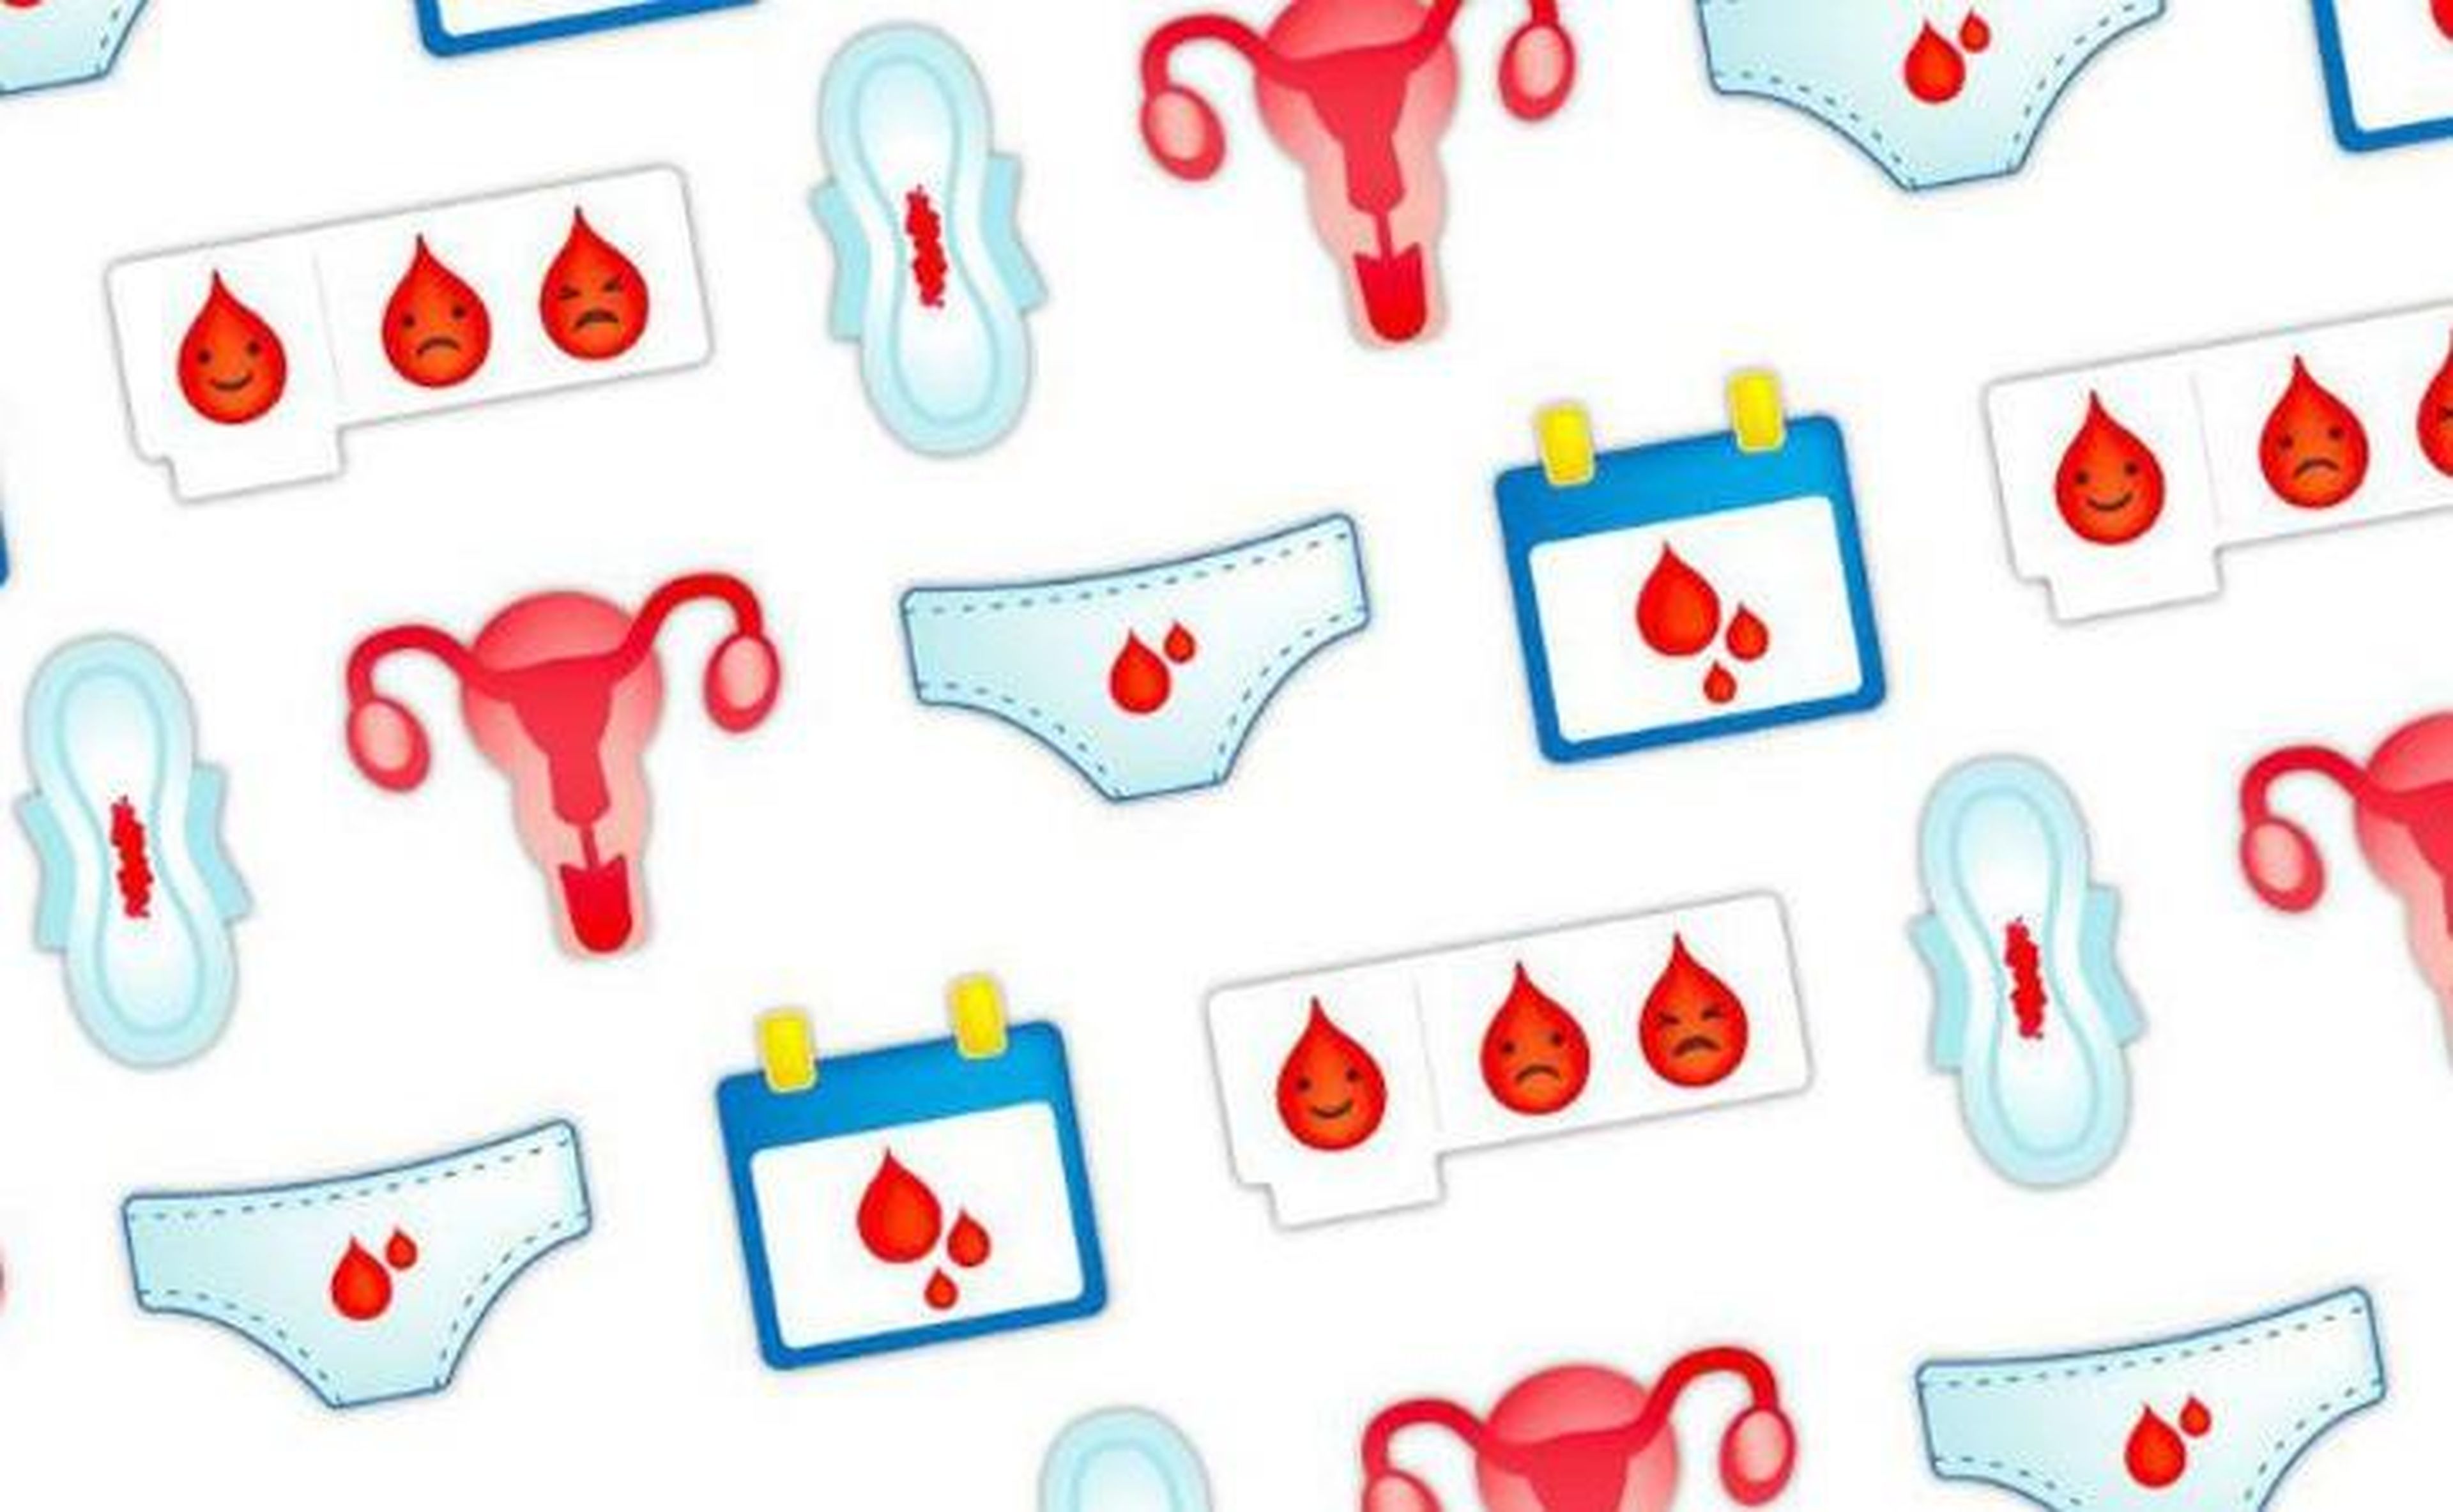 Una ONG lanza una campaña para elegir un emoji de menstruación